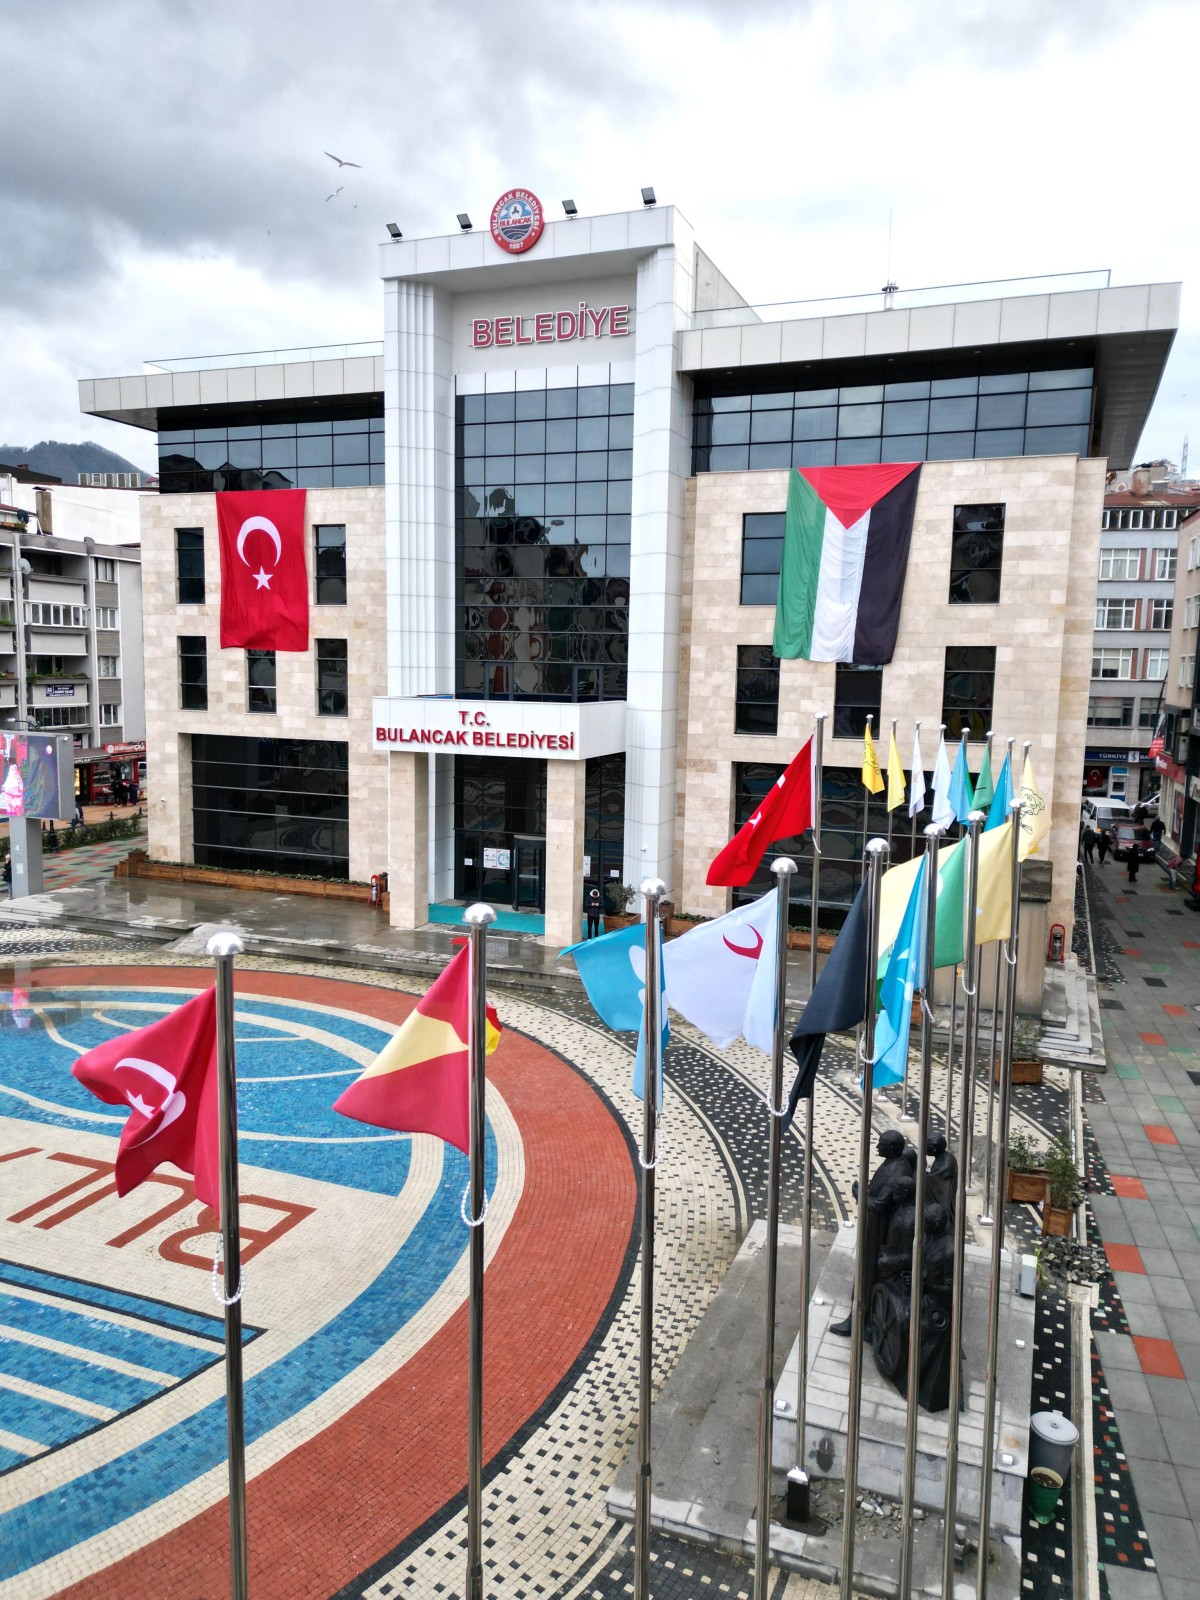 Bulancak’ta Tarihteki Türk Devletlerinin Bayrakları Meydanda